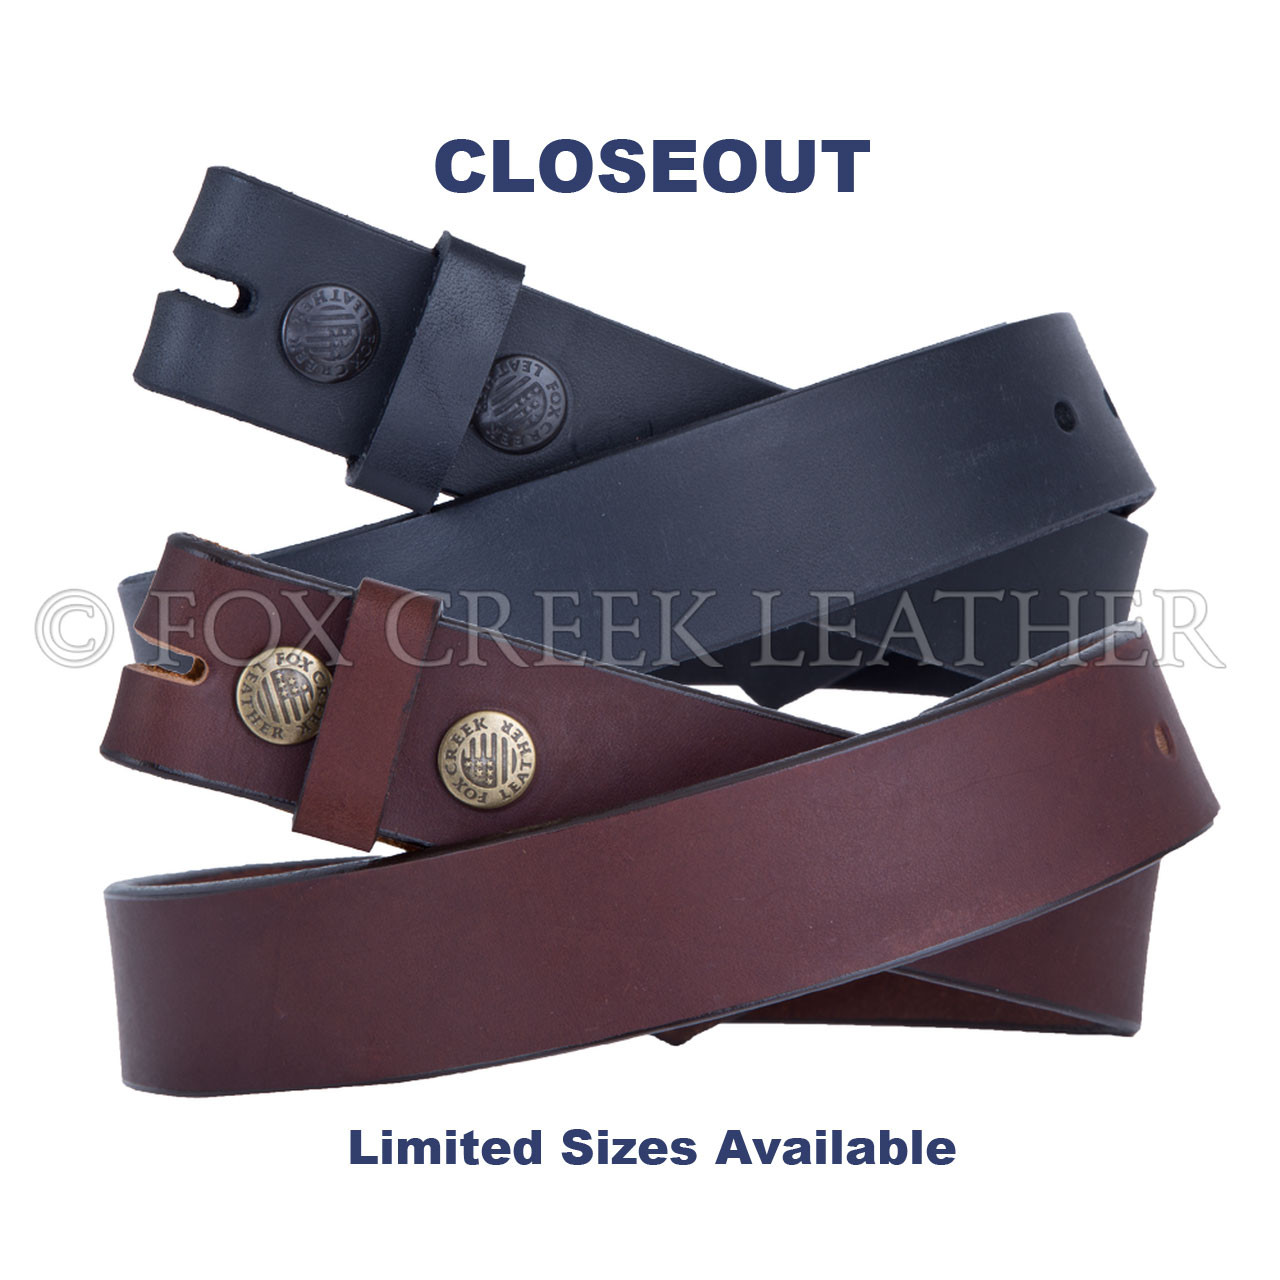 Black Latigo Leather Belt